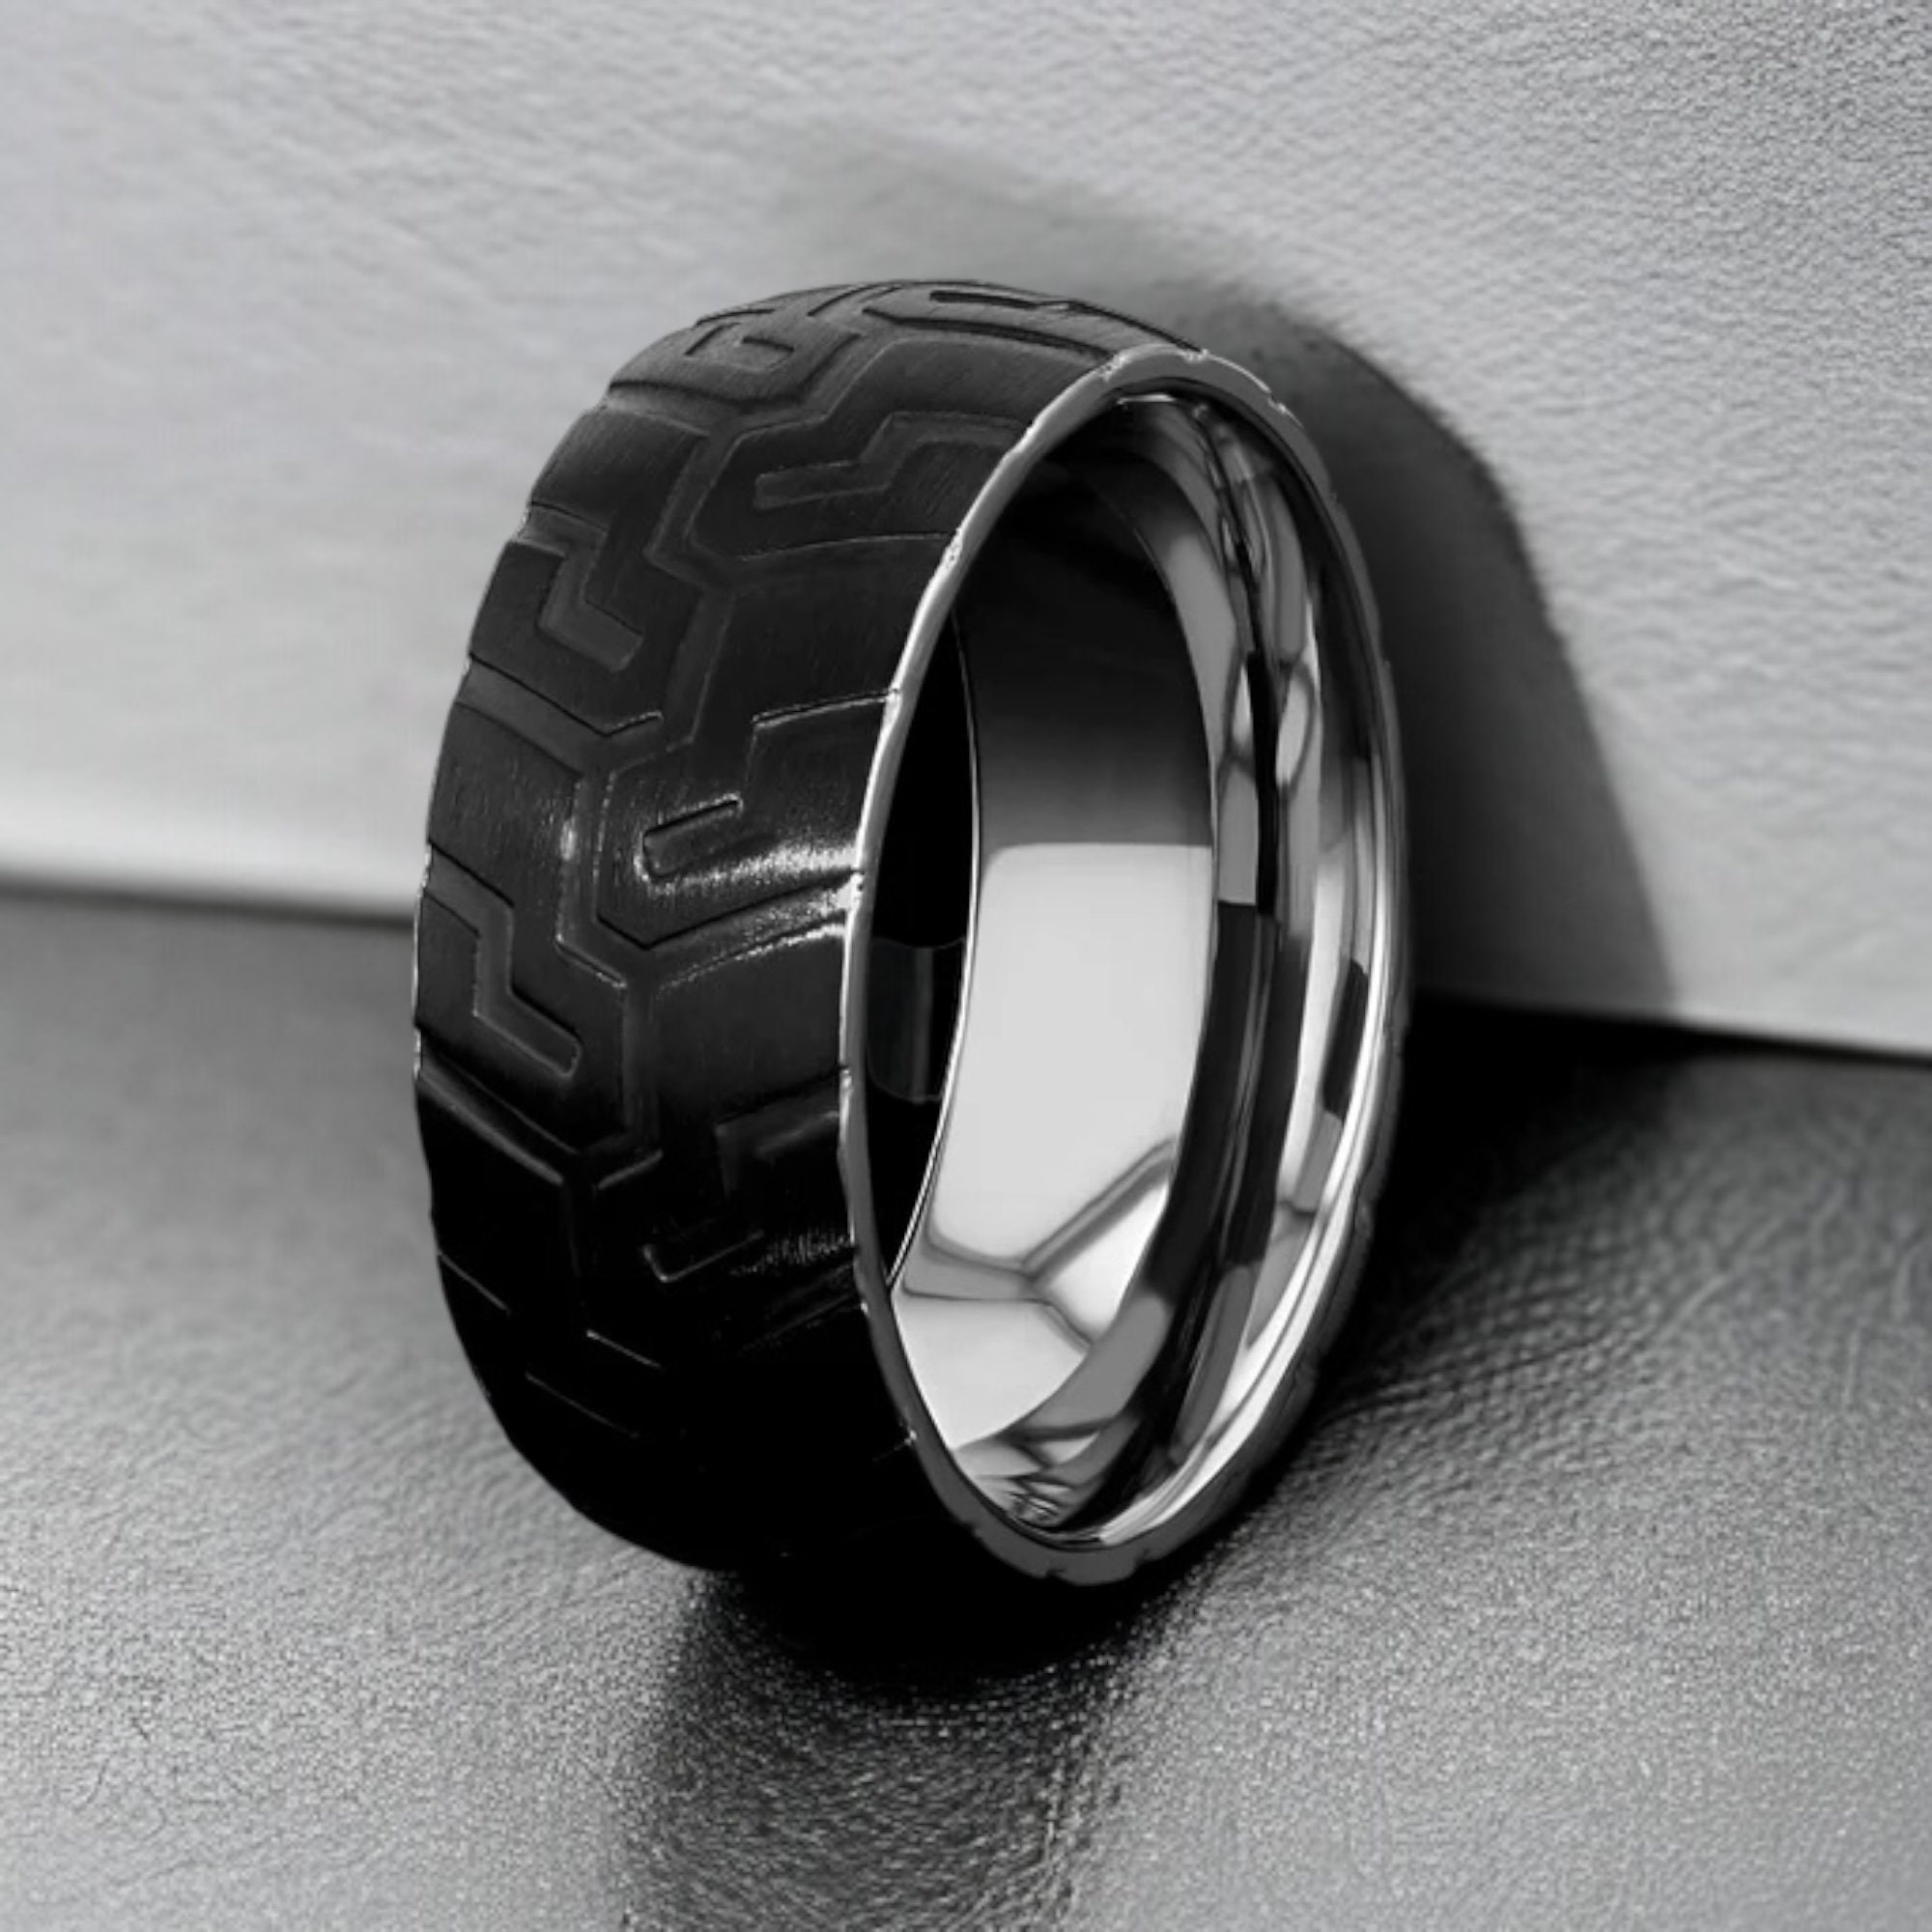 Ducati tire ring | Tire rings, Titanium rings, Rings